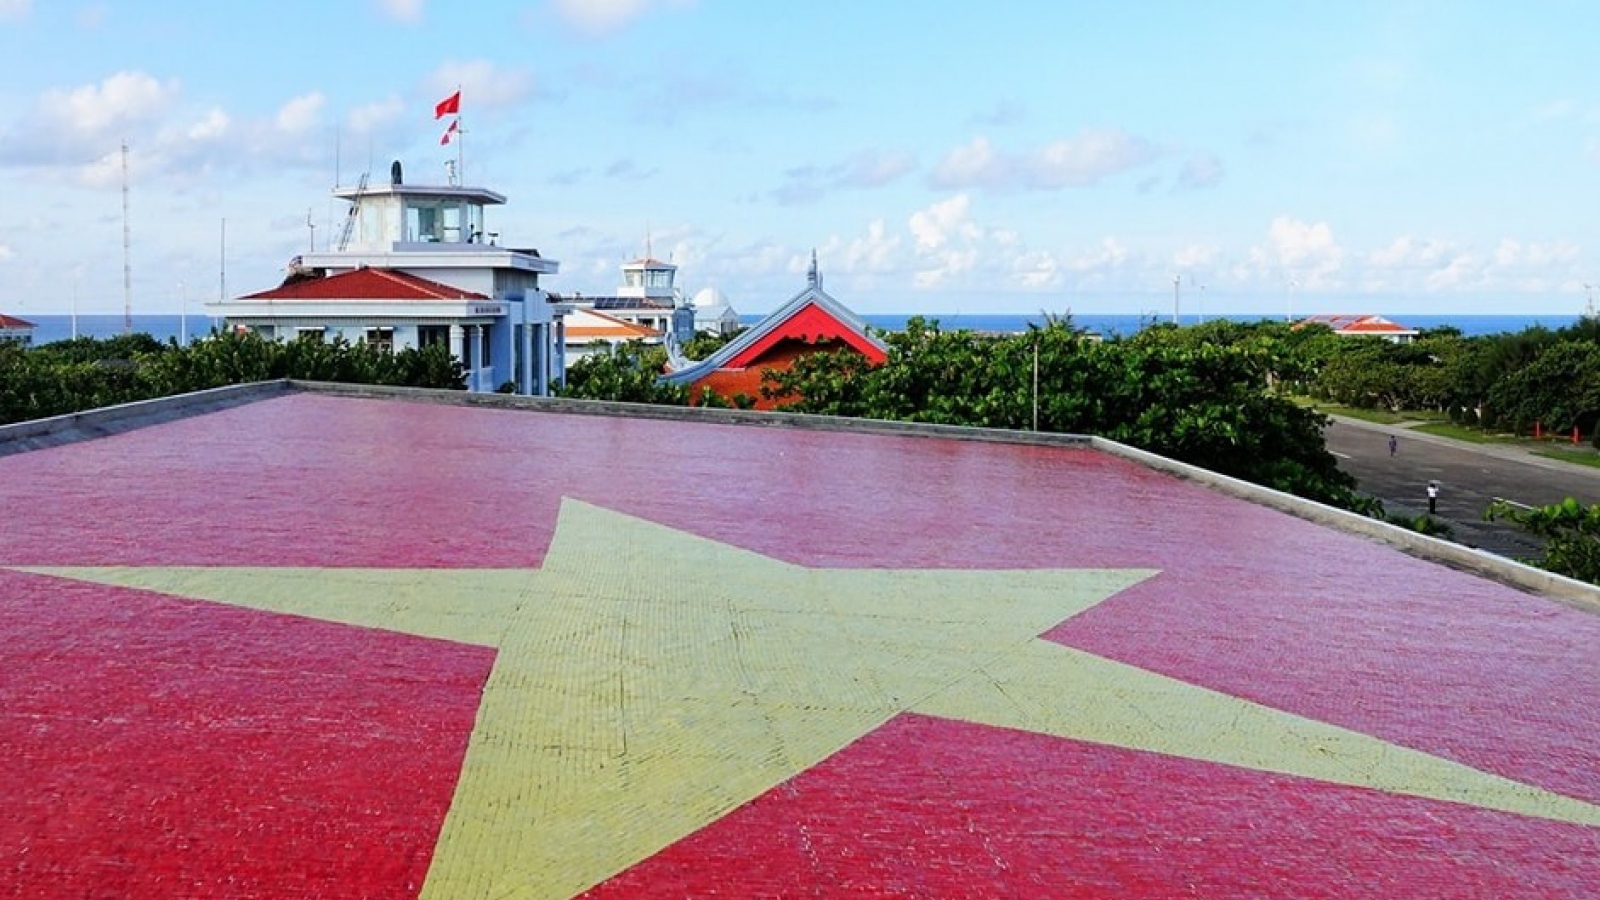 Quốc kỳ bằng gốm khổng lồ trên đảo Trường Sa Lớn của Việt Nam: Được công nhận kỷ lục và niềm tự hào dân tộc - ảnh 3